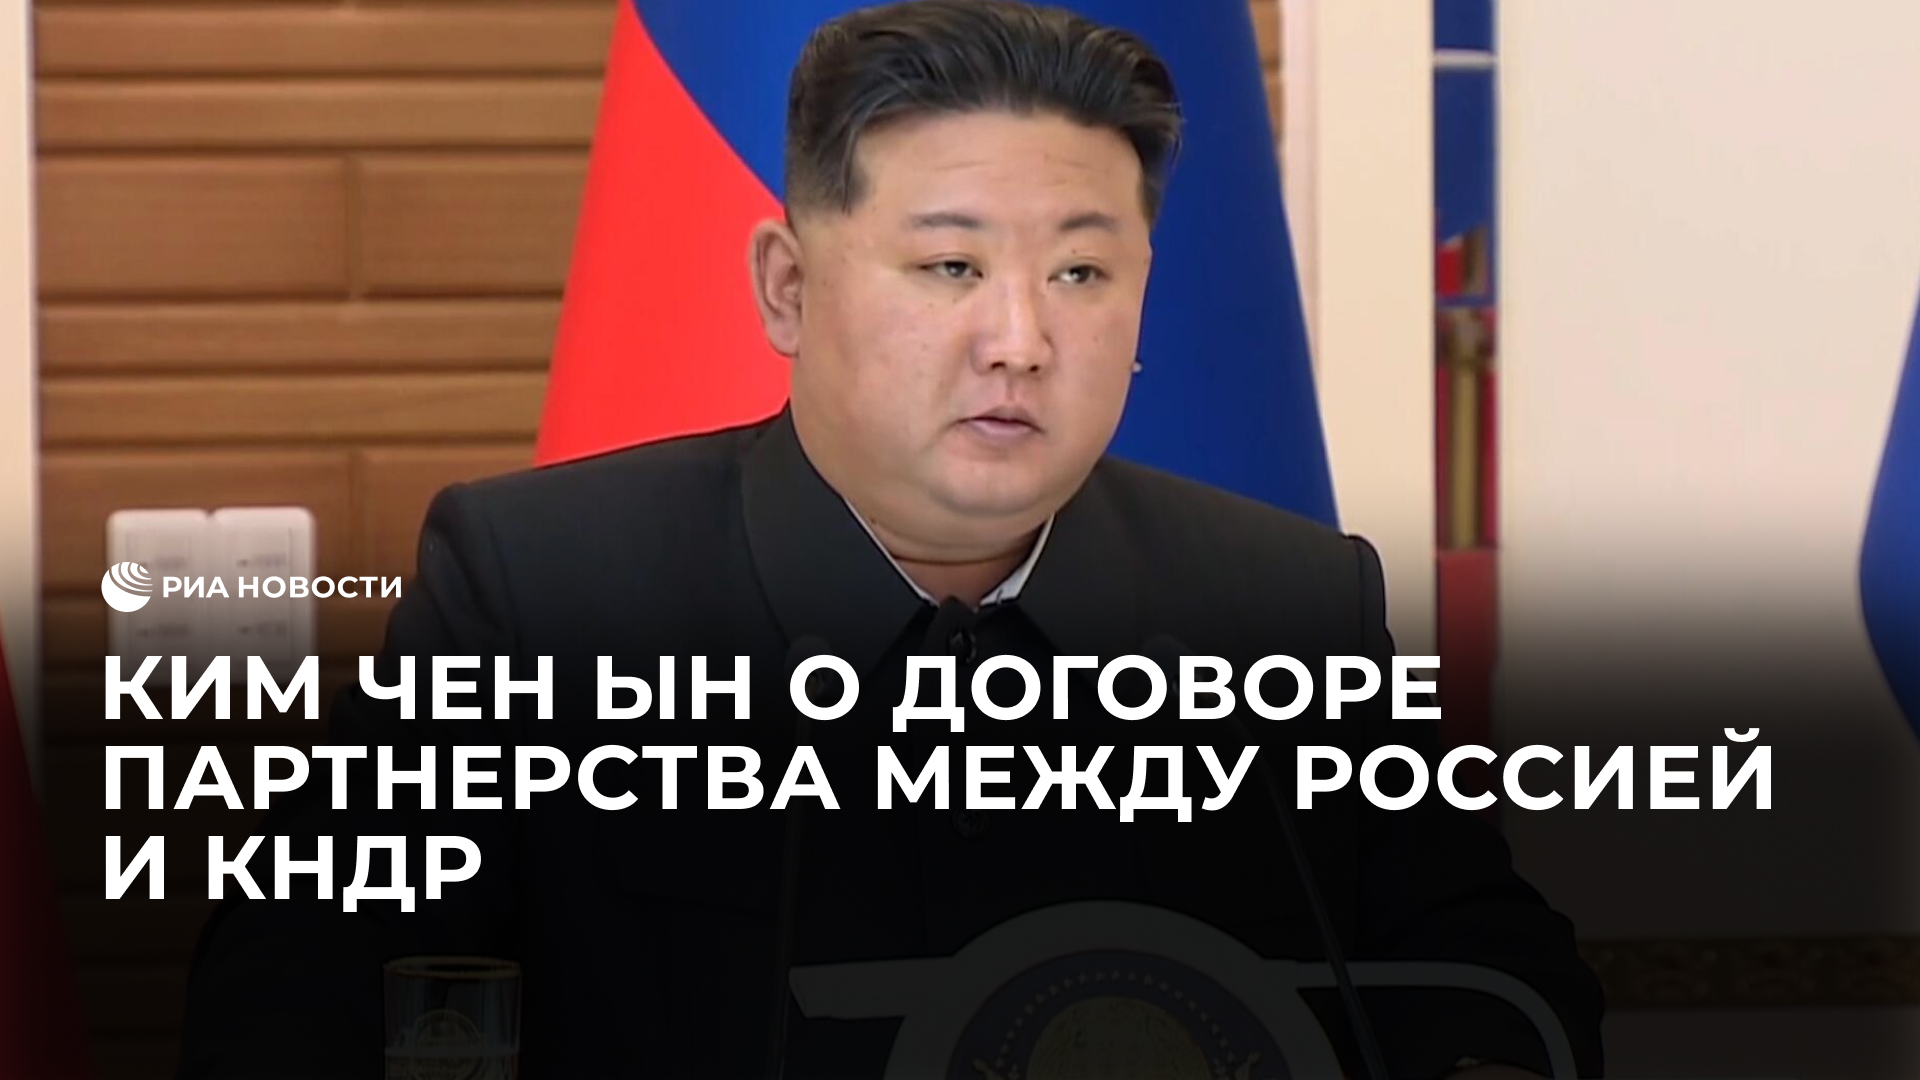 Ким Чен Ын о Договоре партнерства между Россией и КНДР